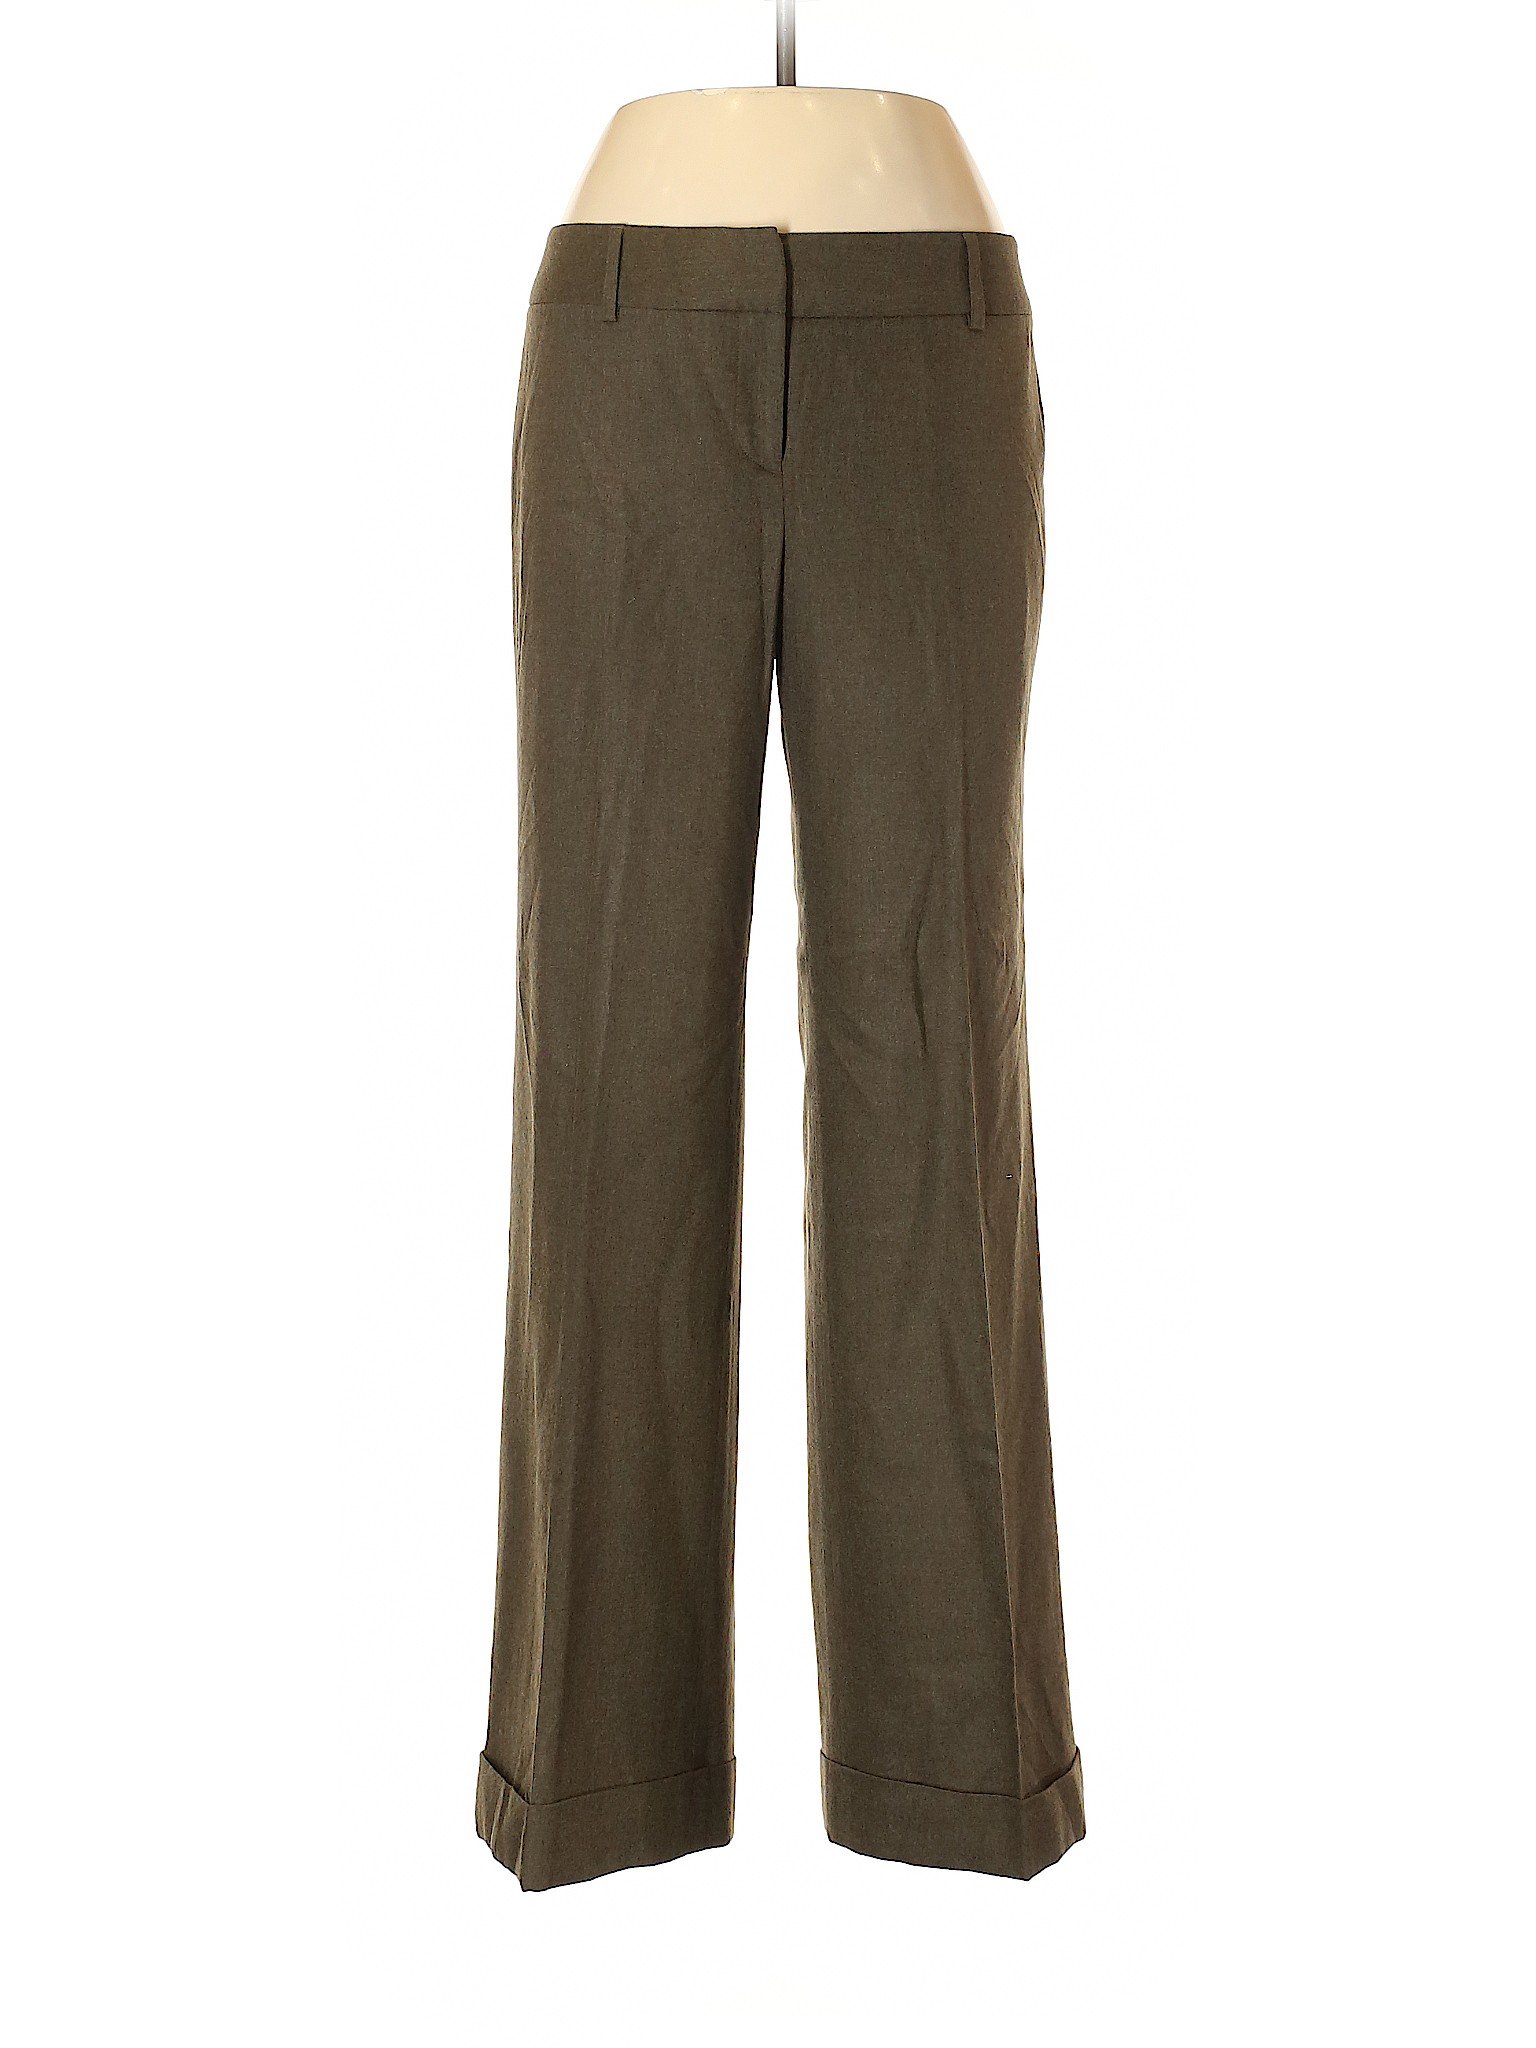 Ann Taylor Women Green Wool Pants 8 Petites | eBay